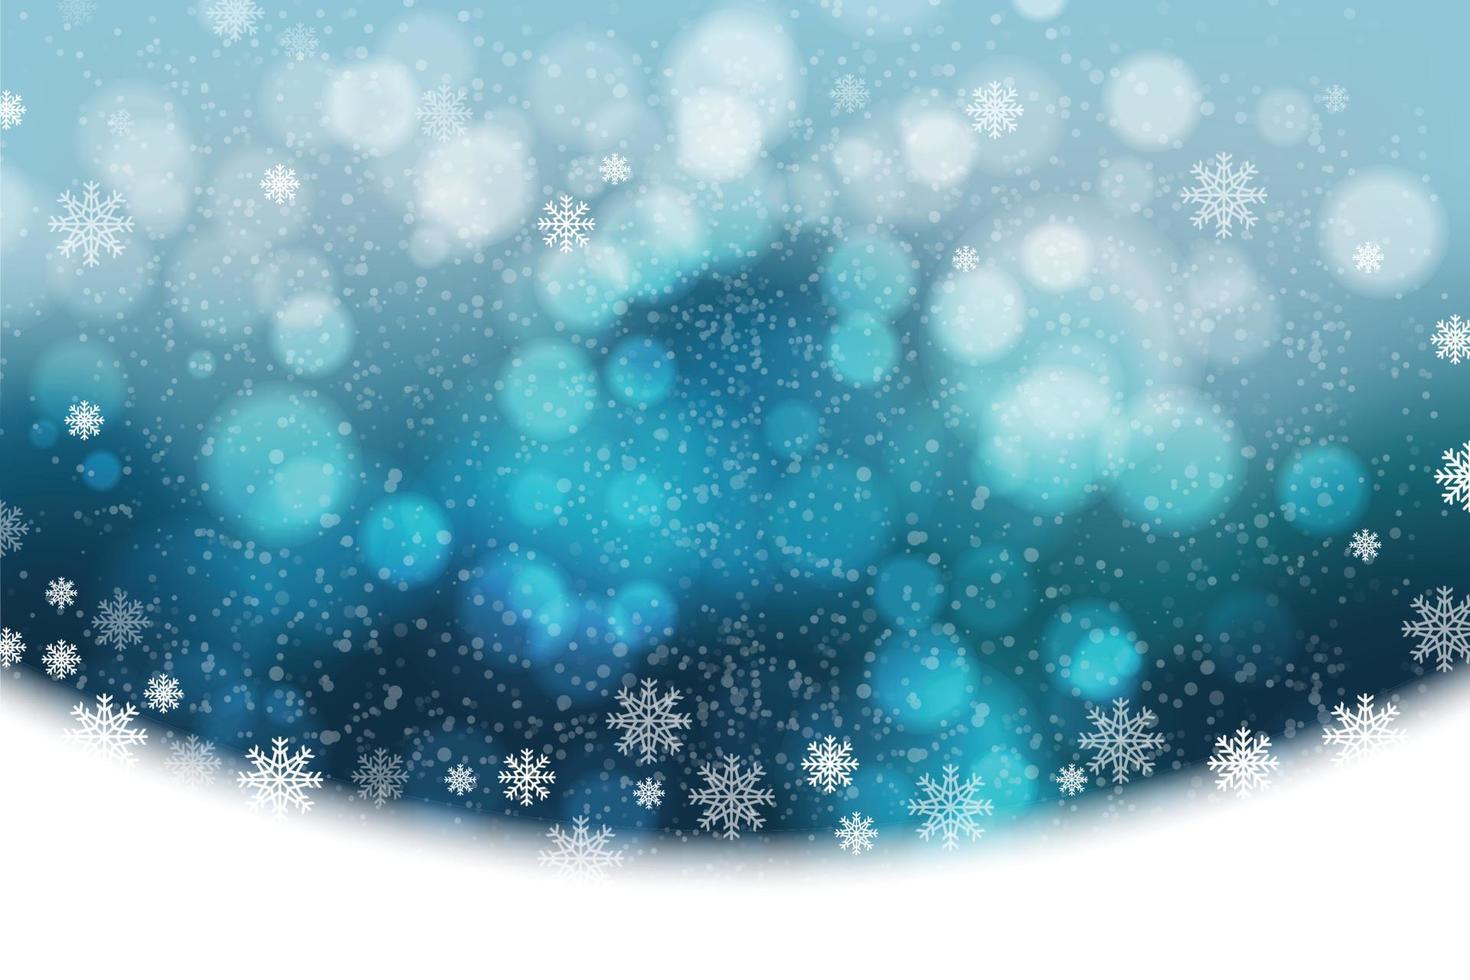 flocons de neige et chutes de neige sur un fond d'hiver bleu froid. illustrateur vecteur eps 10.